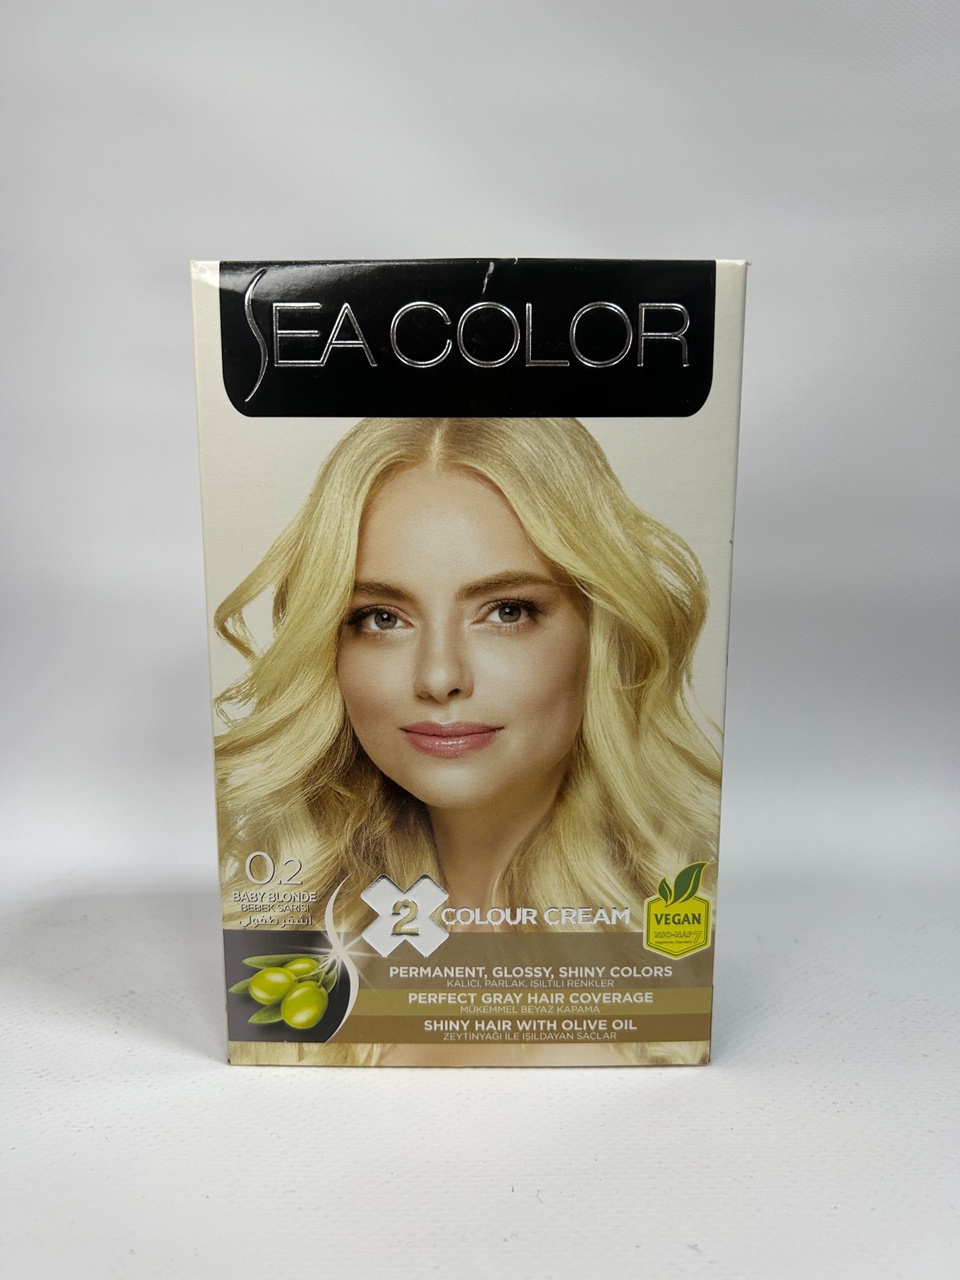 Sea Color 0.2 Краска д/волос «Бэби блондин» - 300 ₽, заказать онлайн.